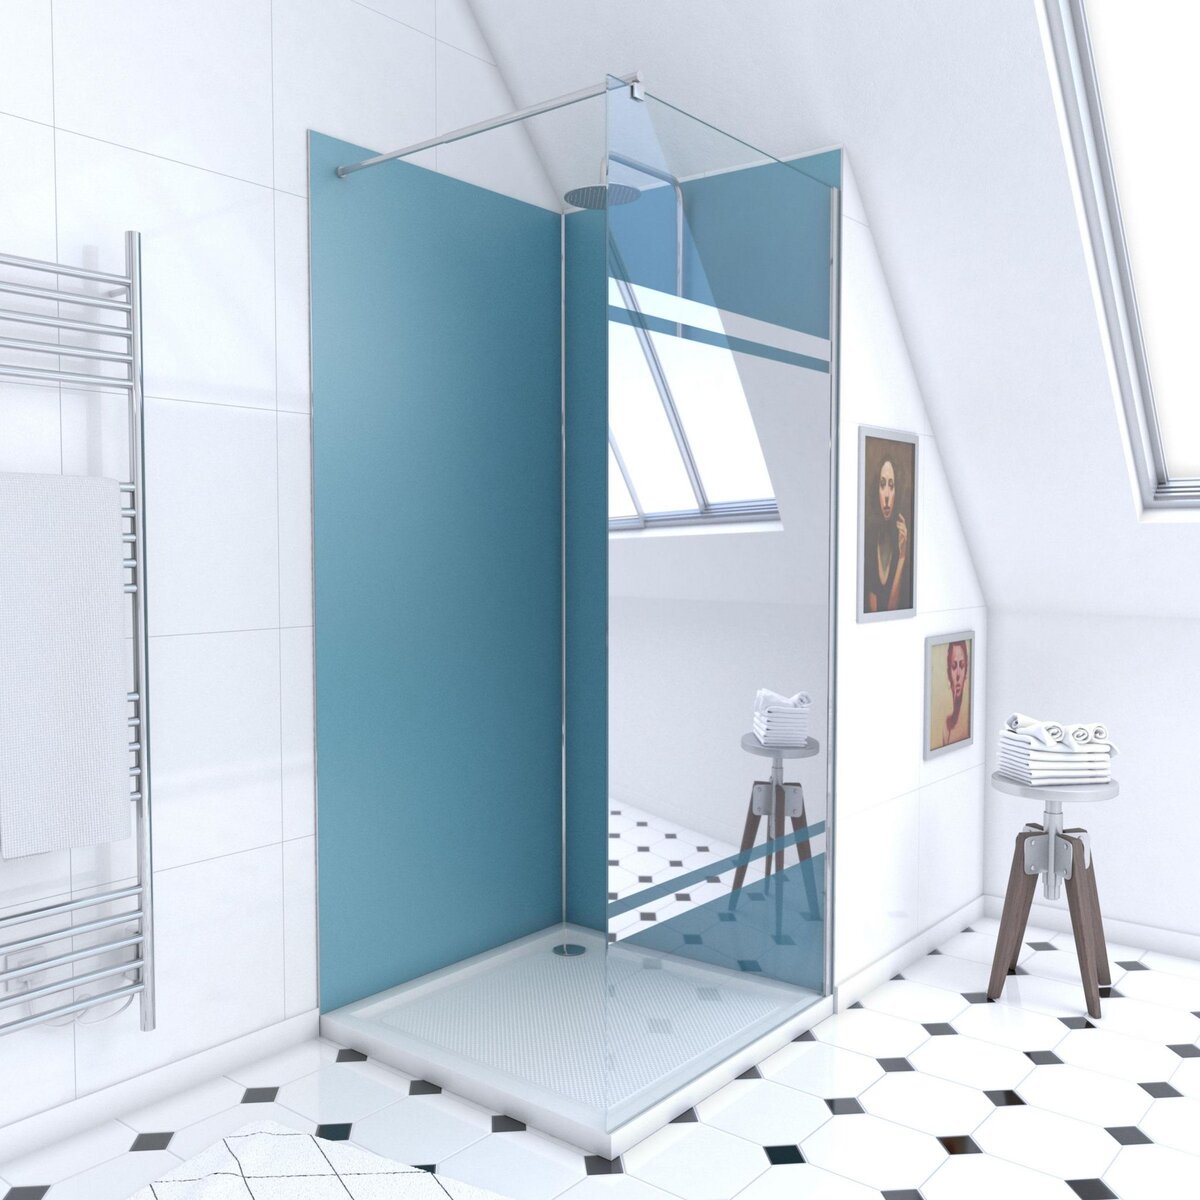 Aurlane Ensemble complet douche à l'Italiennne avec Receveur 90x90 + Paroi miroir + Panneaux muraux